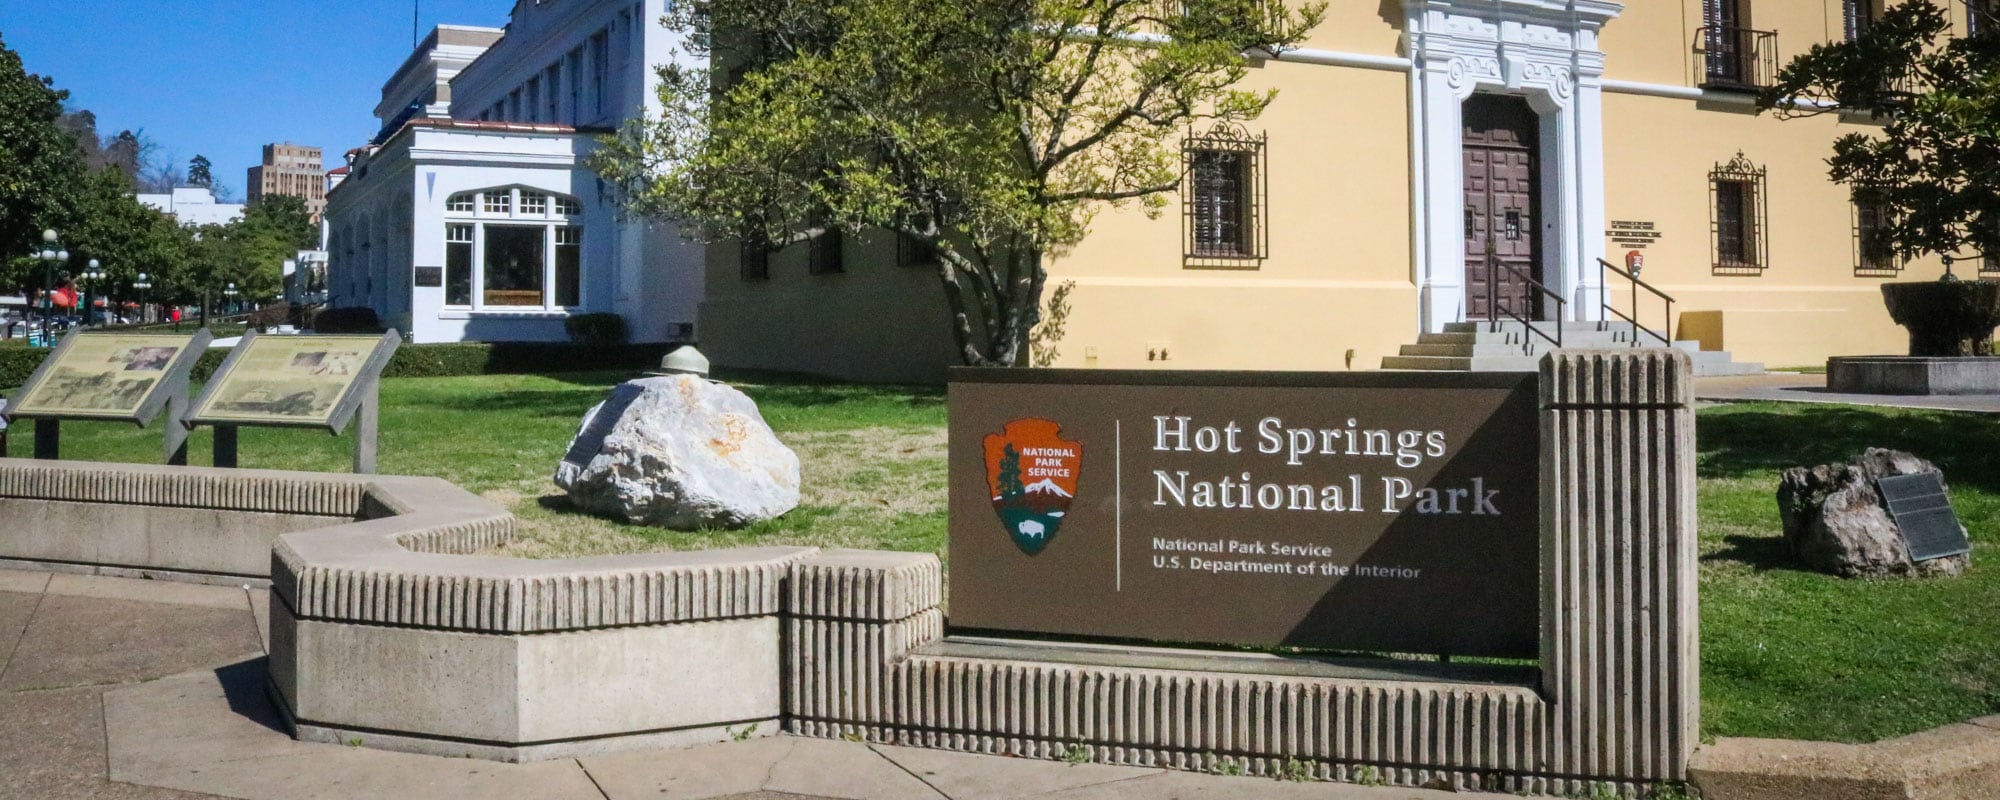 Hot Springs National Park - Banner Park Sign